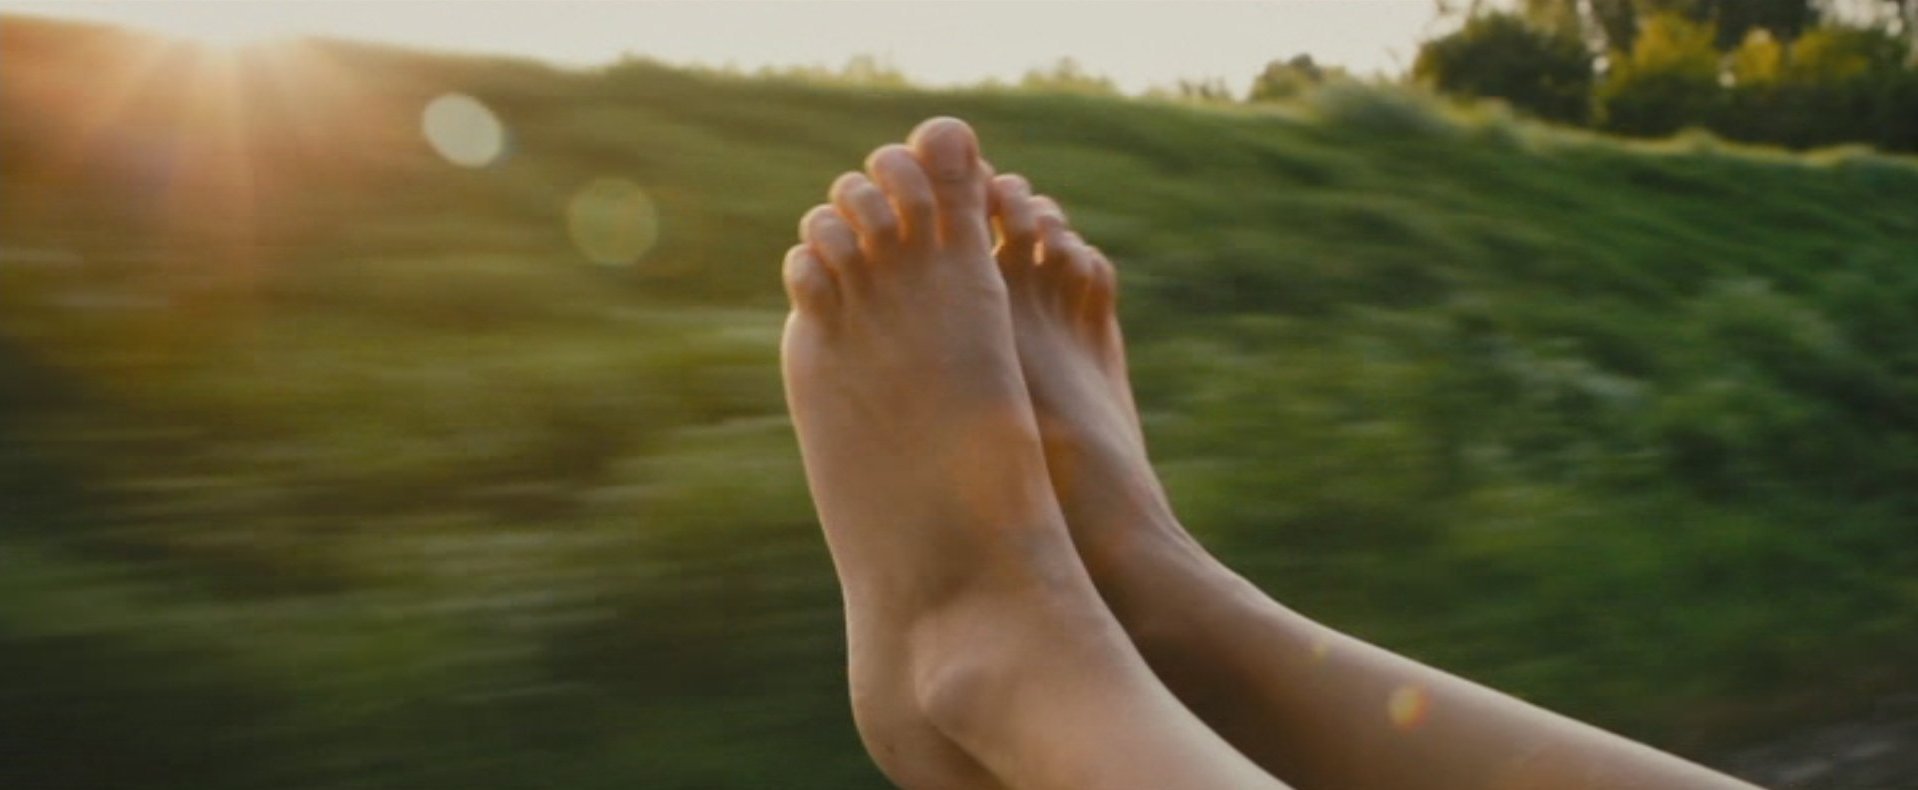 Sienna Millers Feet